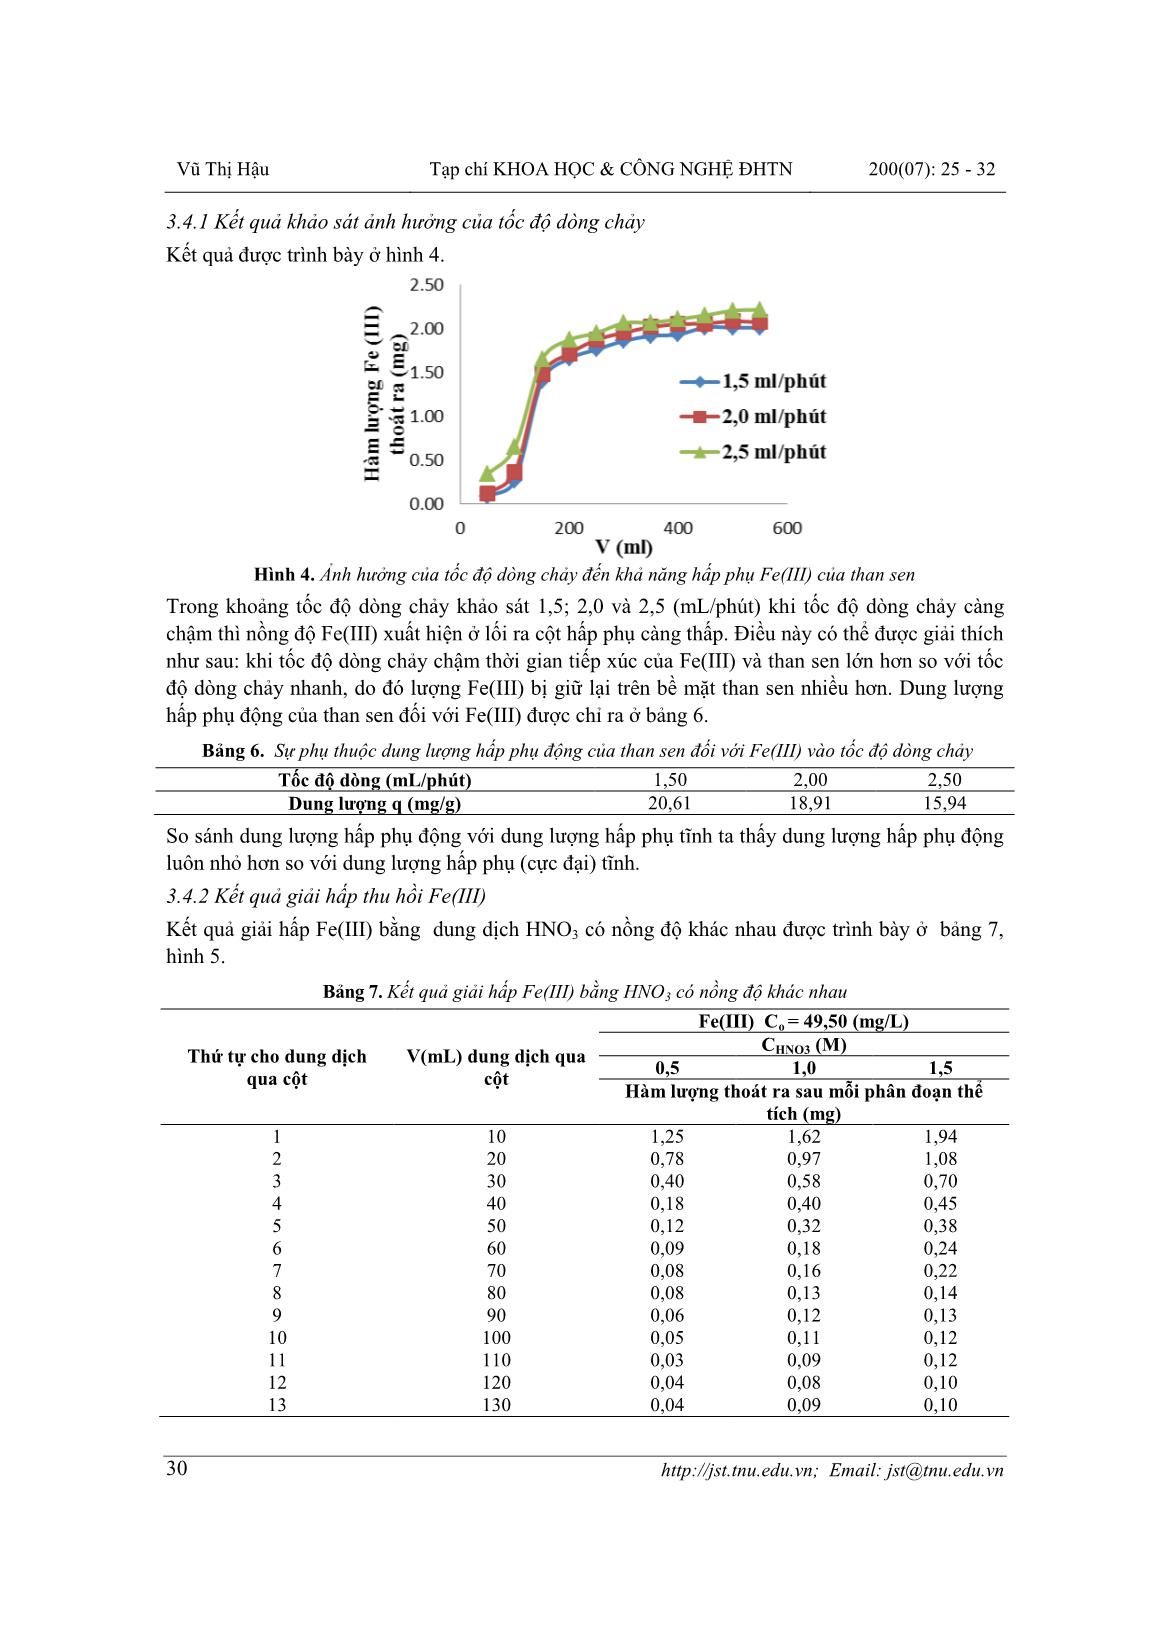 Nghiên cứu khả năng hấp phụ Fe(III) của than chế tạo từ cây sen hoạt hóa bằng Axit Sunfuric trang 6